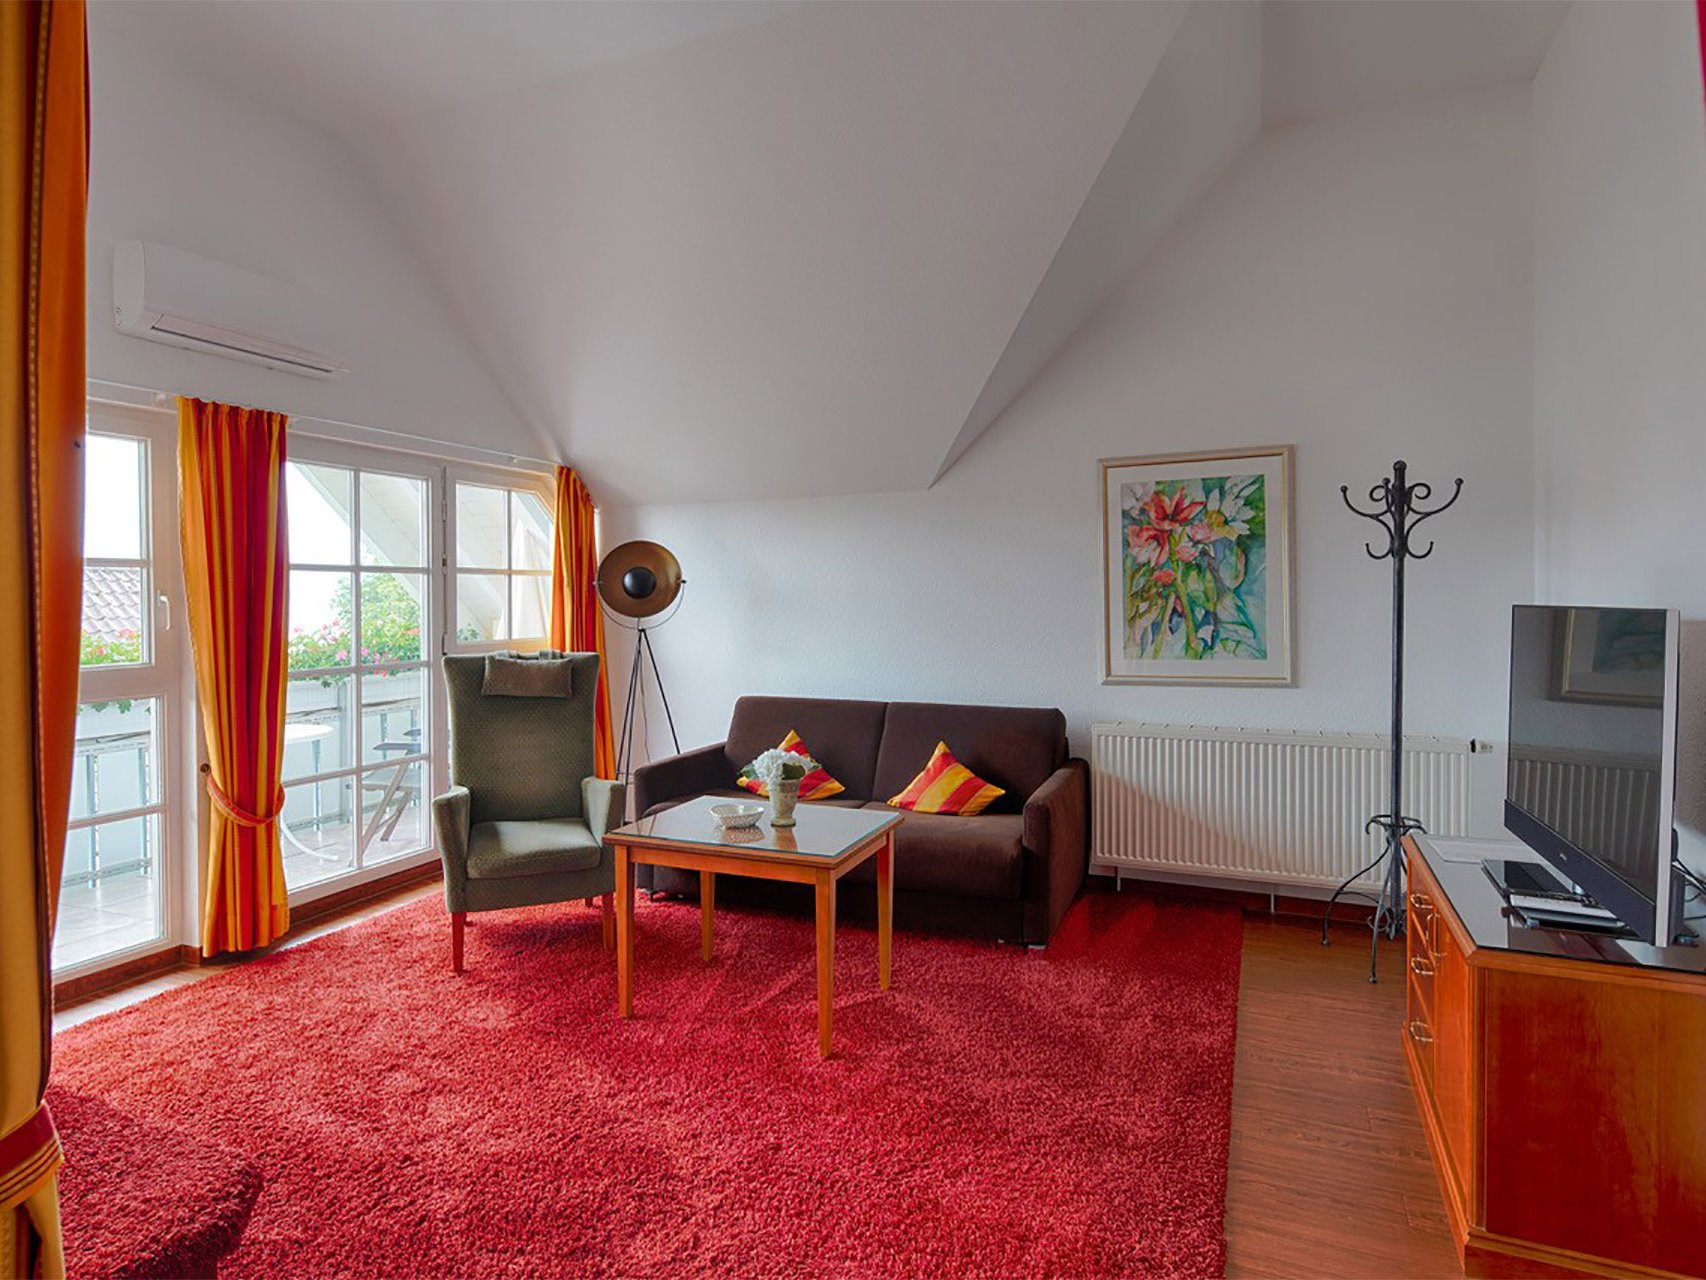 Junior-Suite mit seitlichem Seeblick des Hotels Seeperle am Bodensee.